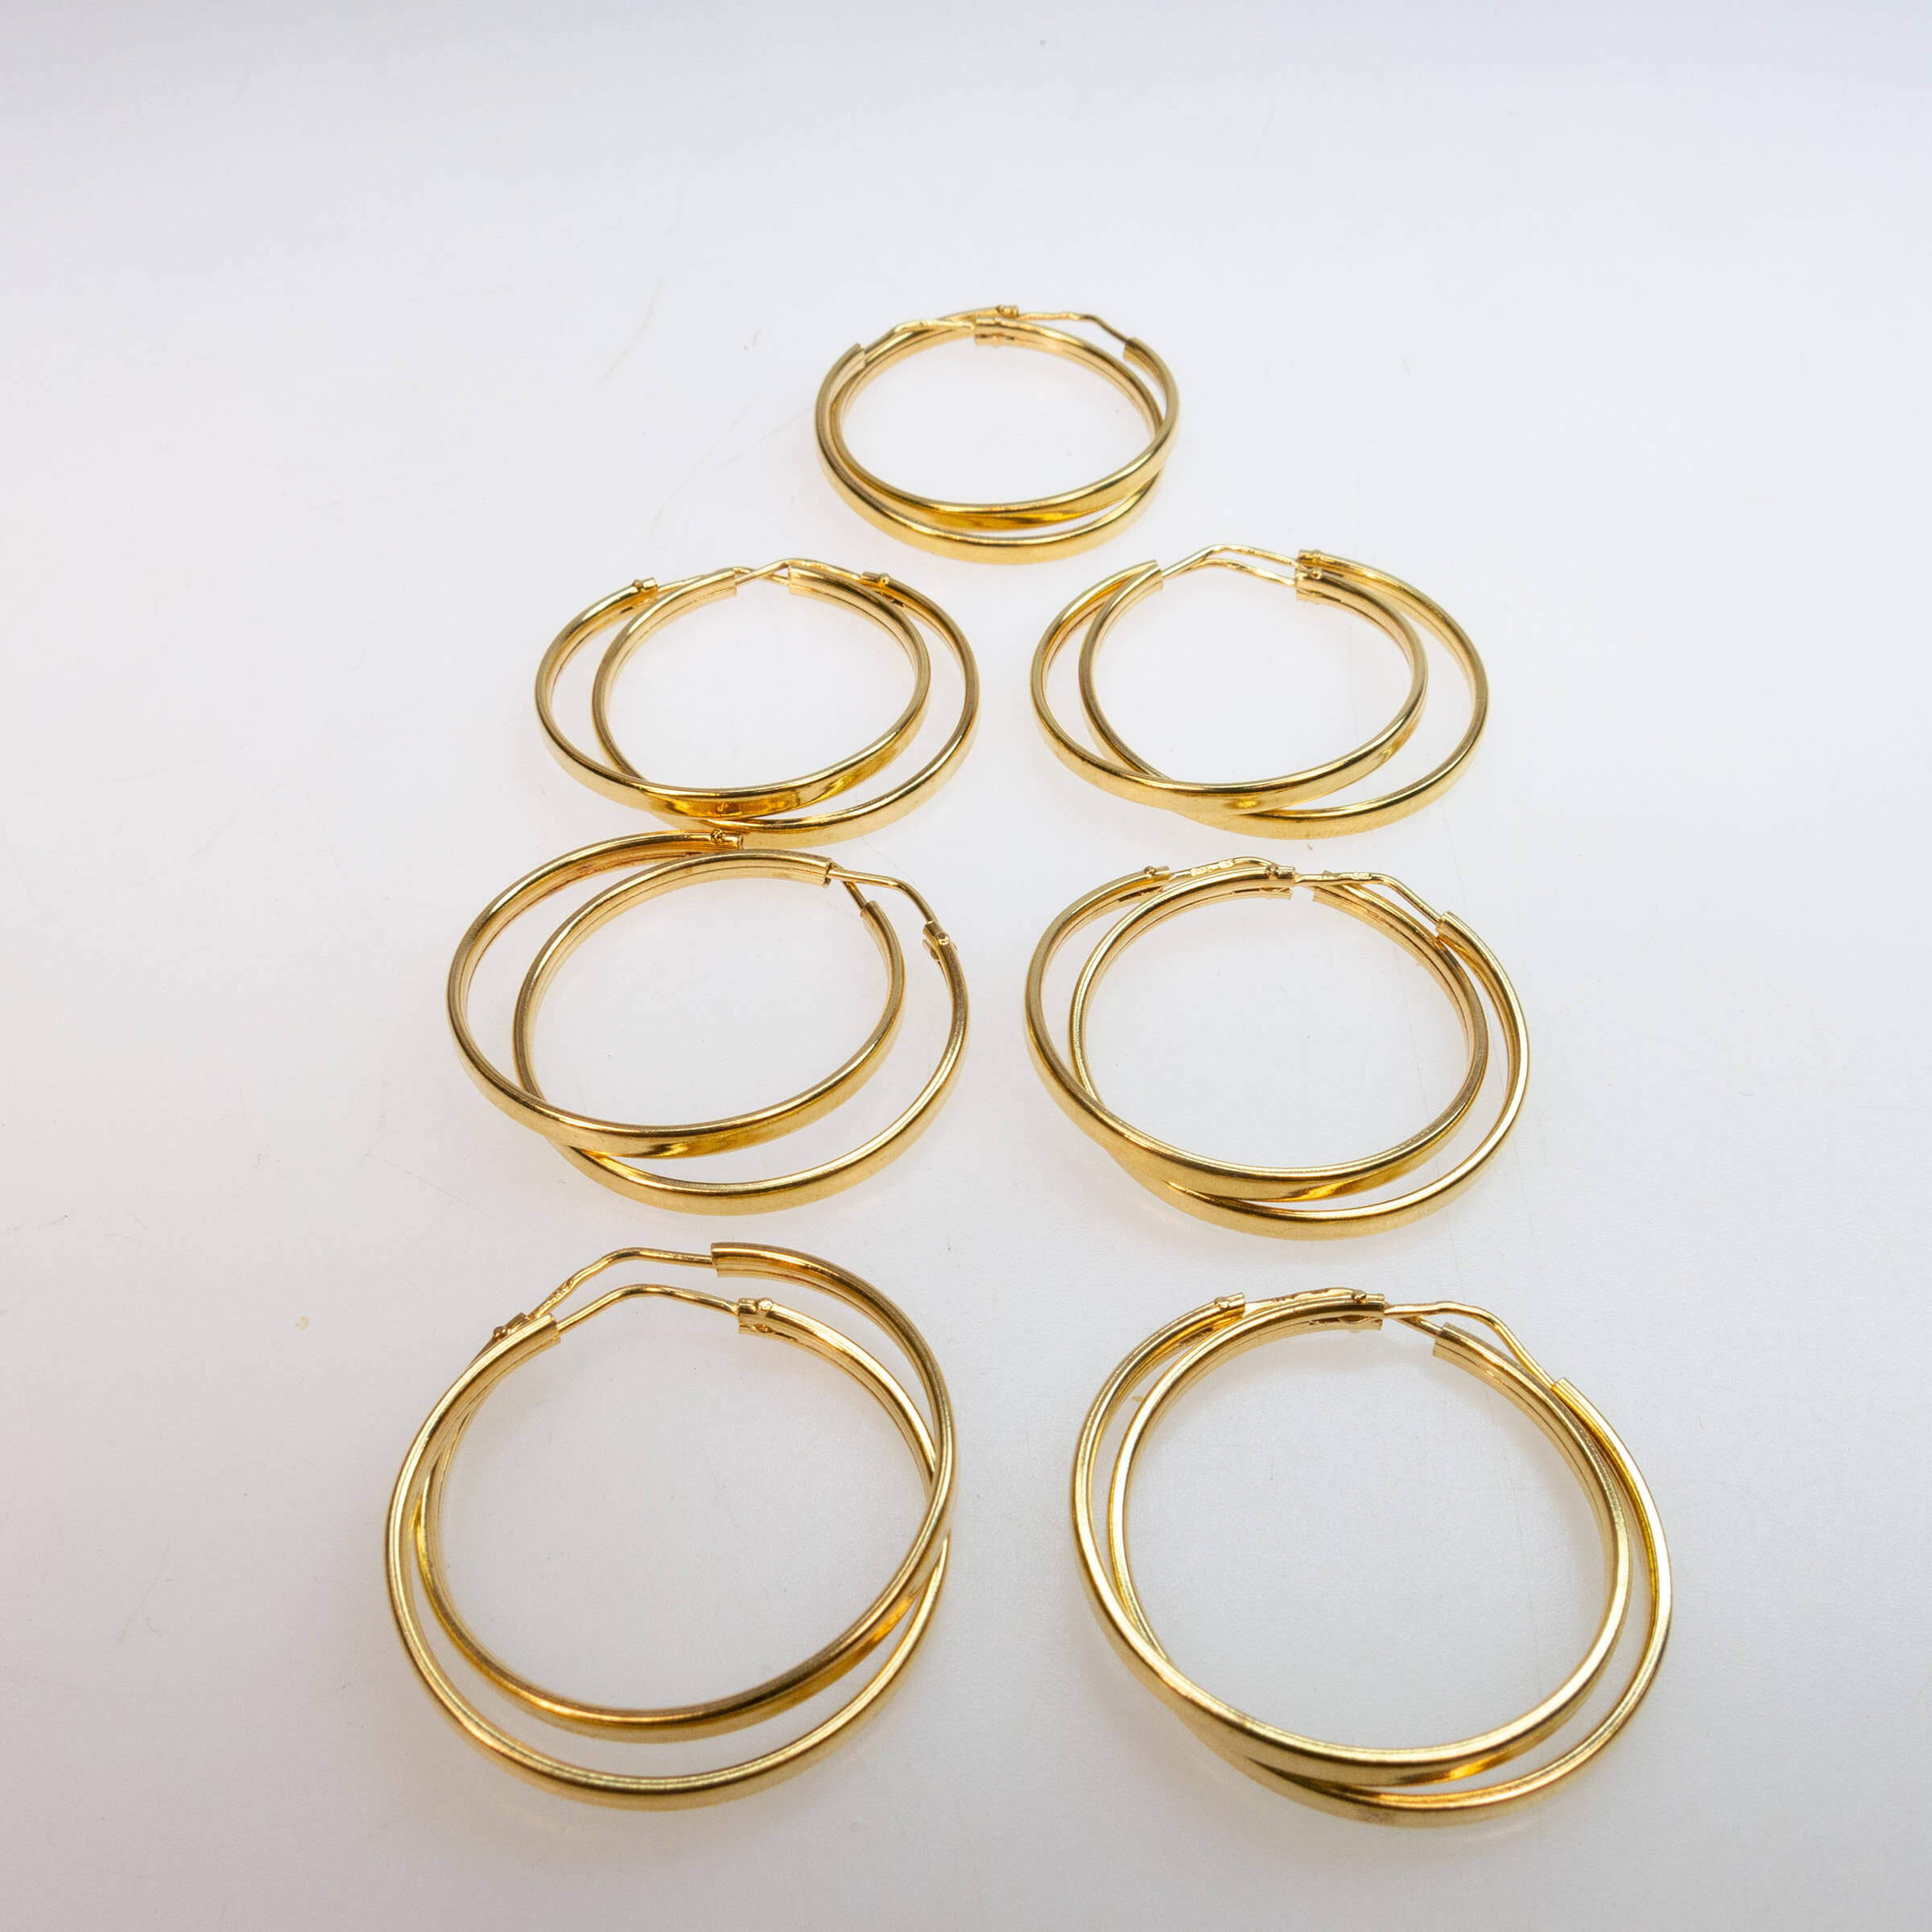 7 Pairs Of 18k Yellow Gold Hoop Earrings